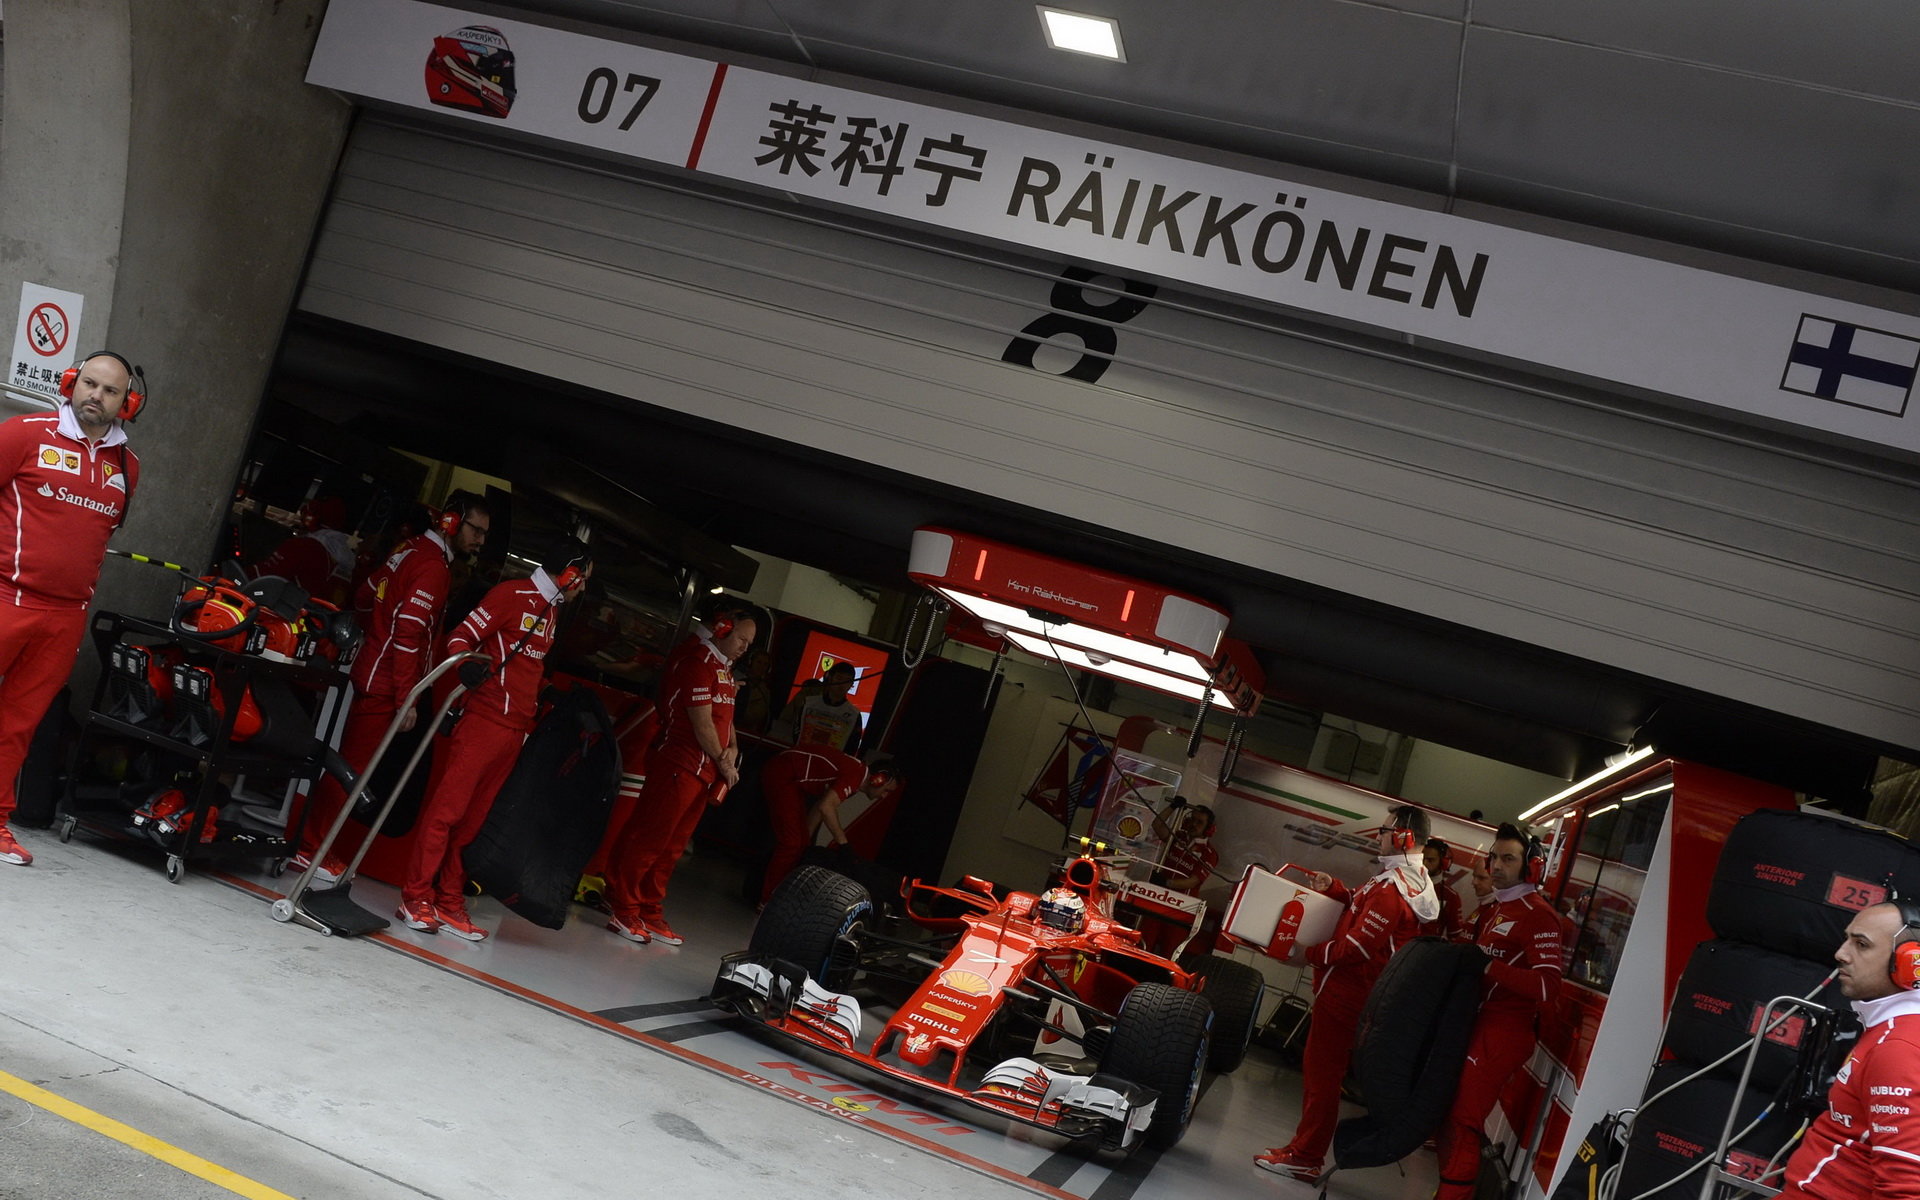 Kimi Räikkönen za deštivého tréninku v Číně